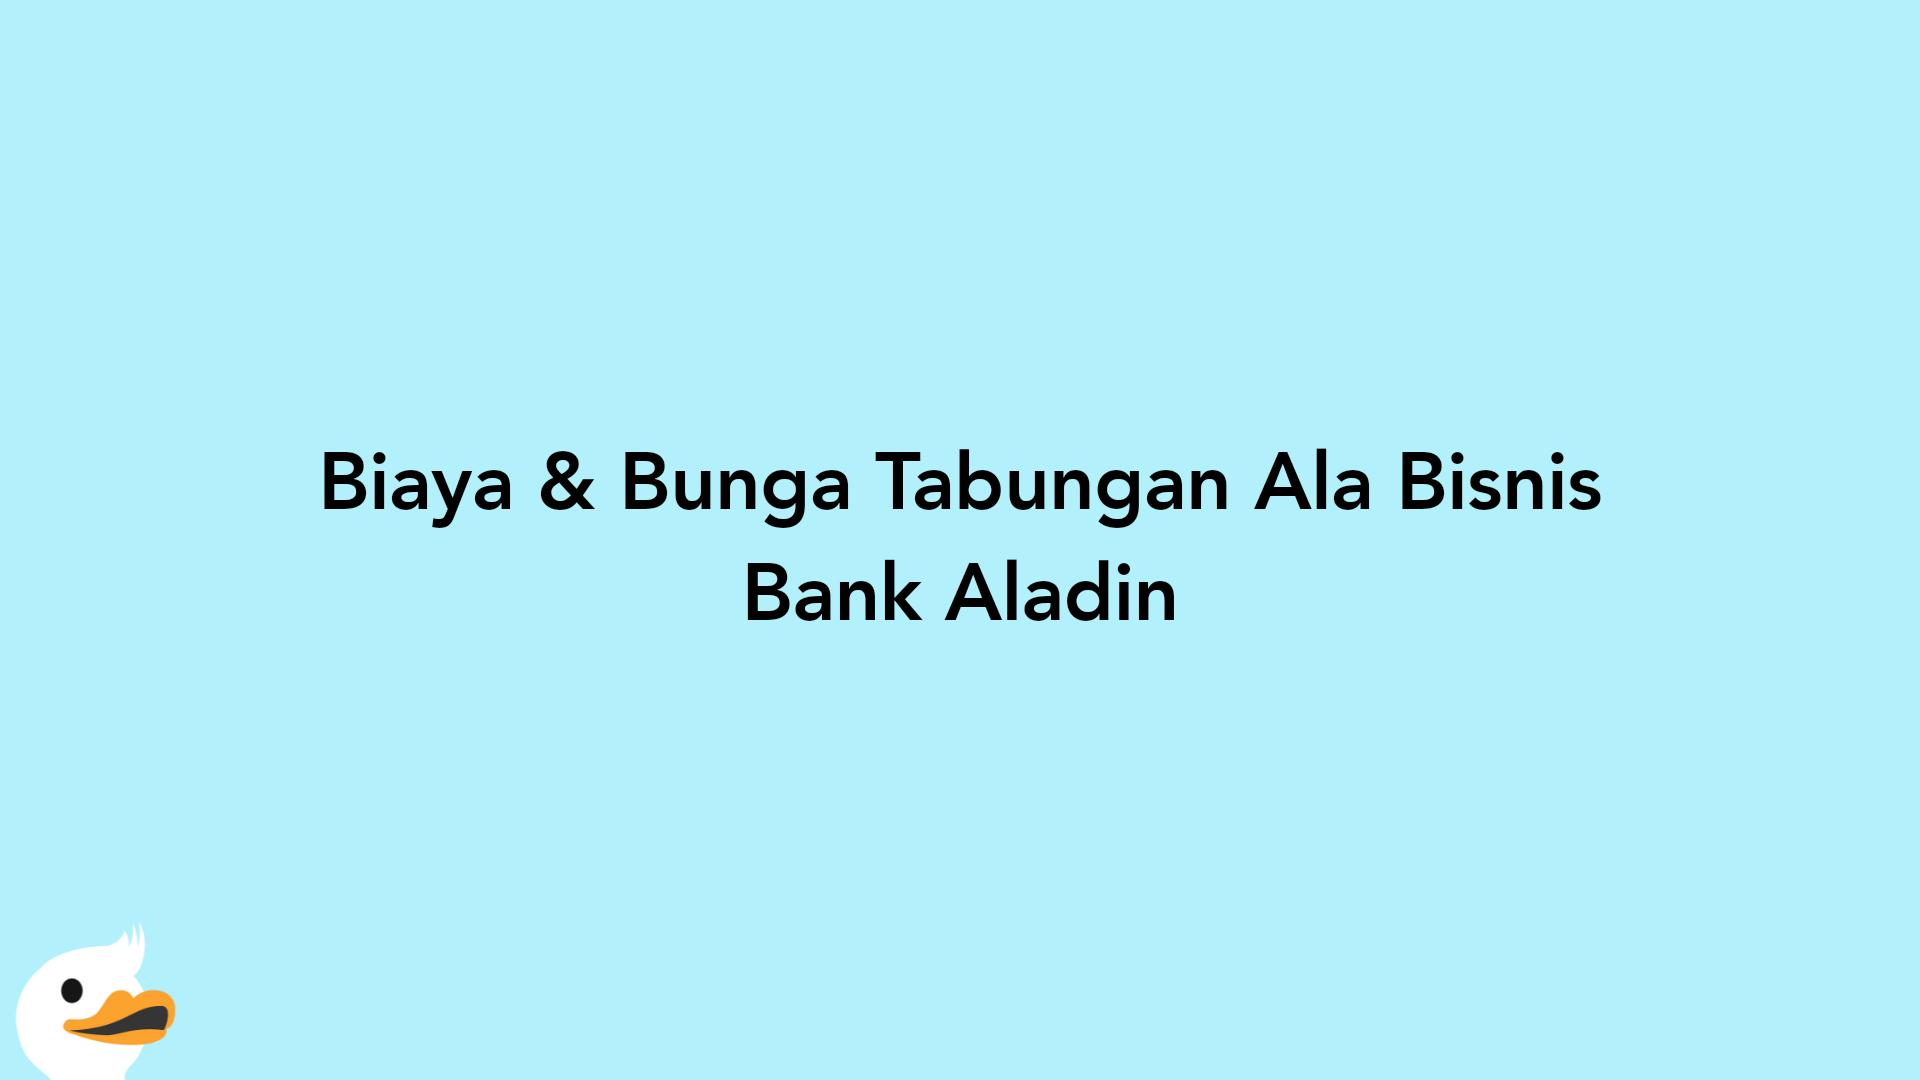 Biaya & Bunga Tabungan Ala Bisnis Bank Aladin